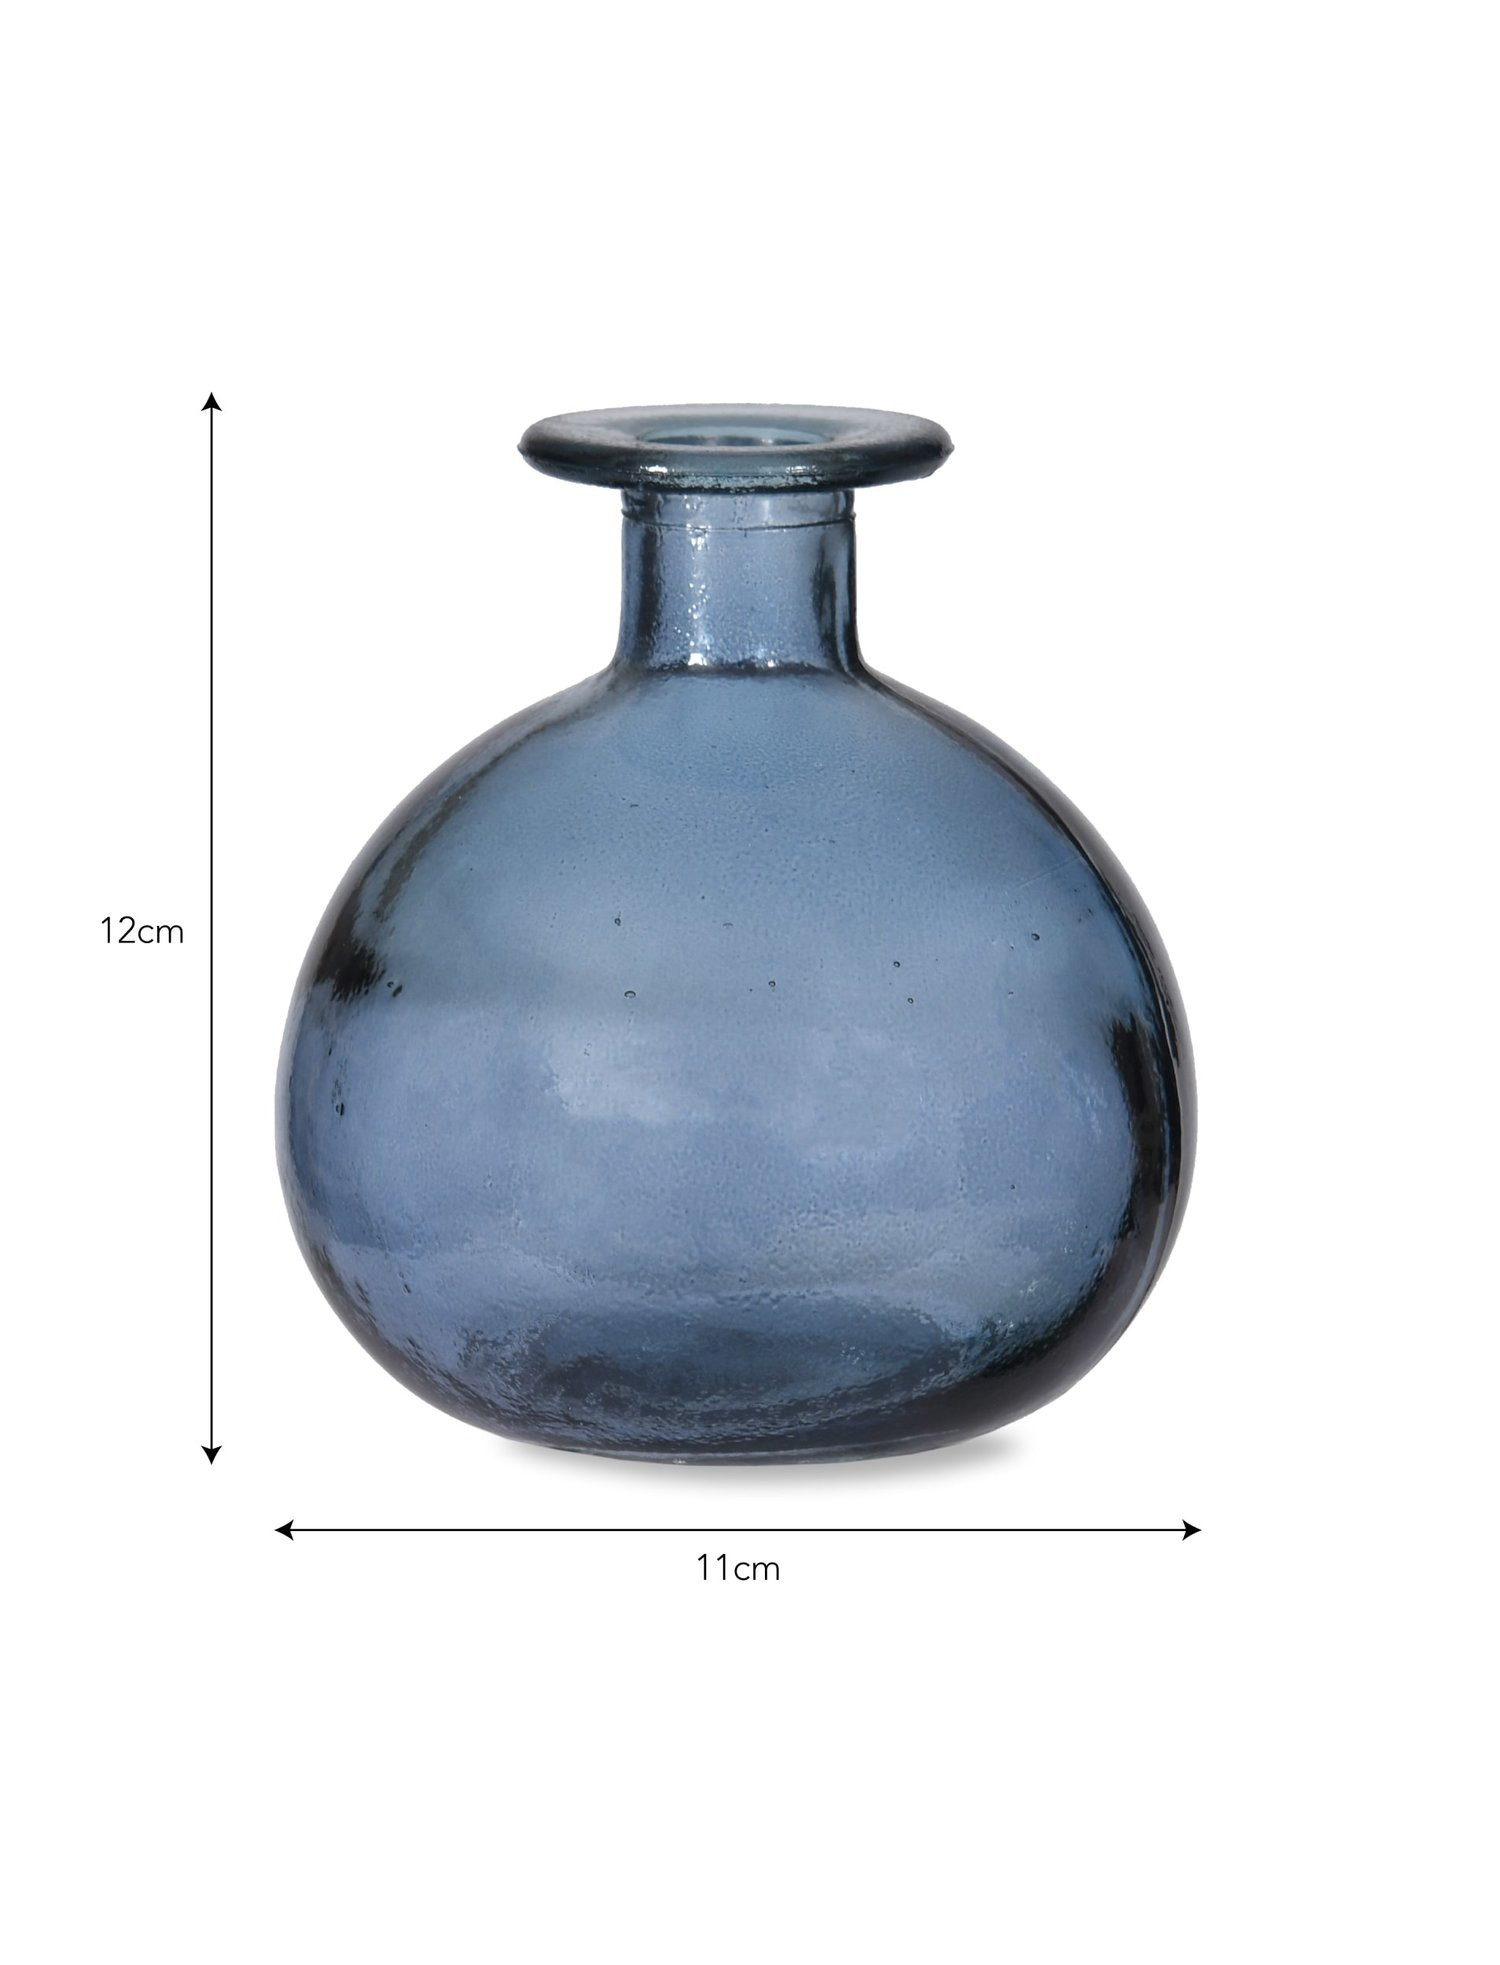 Recycled Glass Vase Blue Of Round Bud Vase Plain Useful with Regard to Round Bud Vase